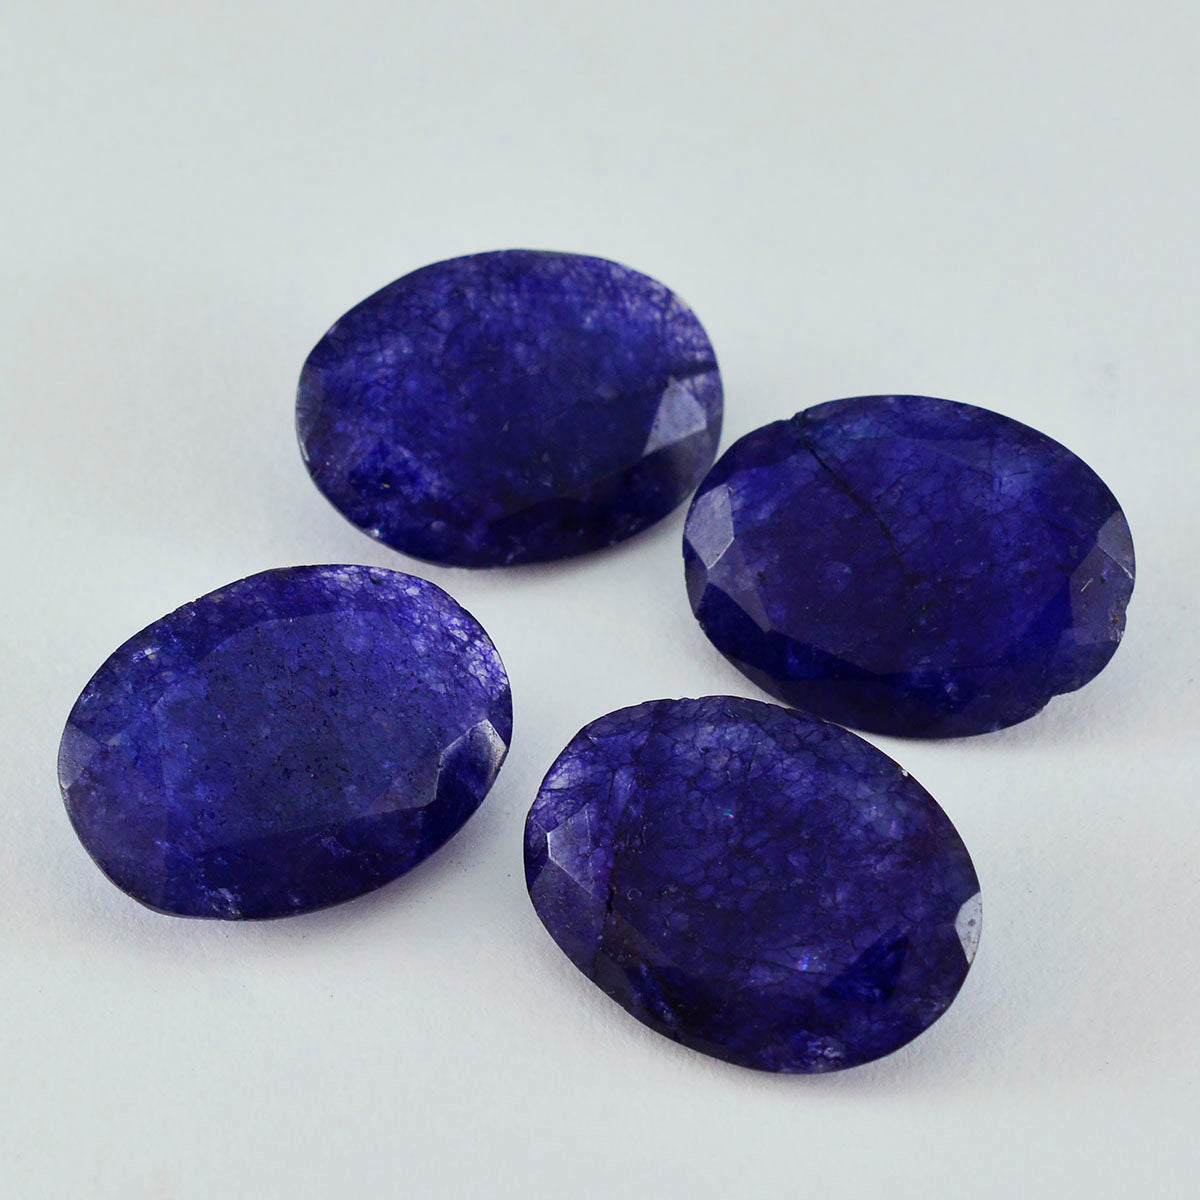 Riyogems 1 Stück echter blauer Jaspis, facettiert, 10 x 14 mm, ovale Form, schön aussehende, hochwertige lose Edelsteine